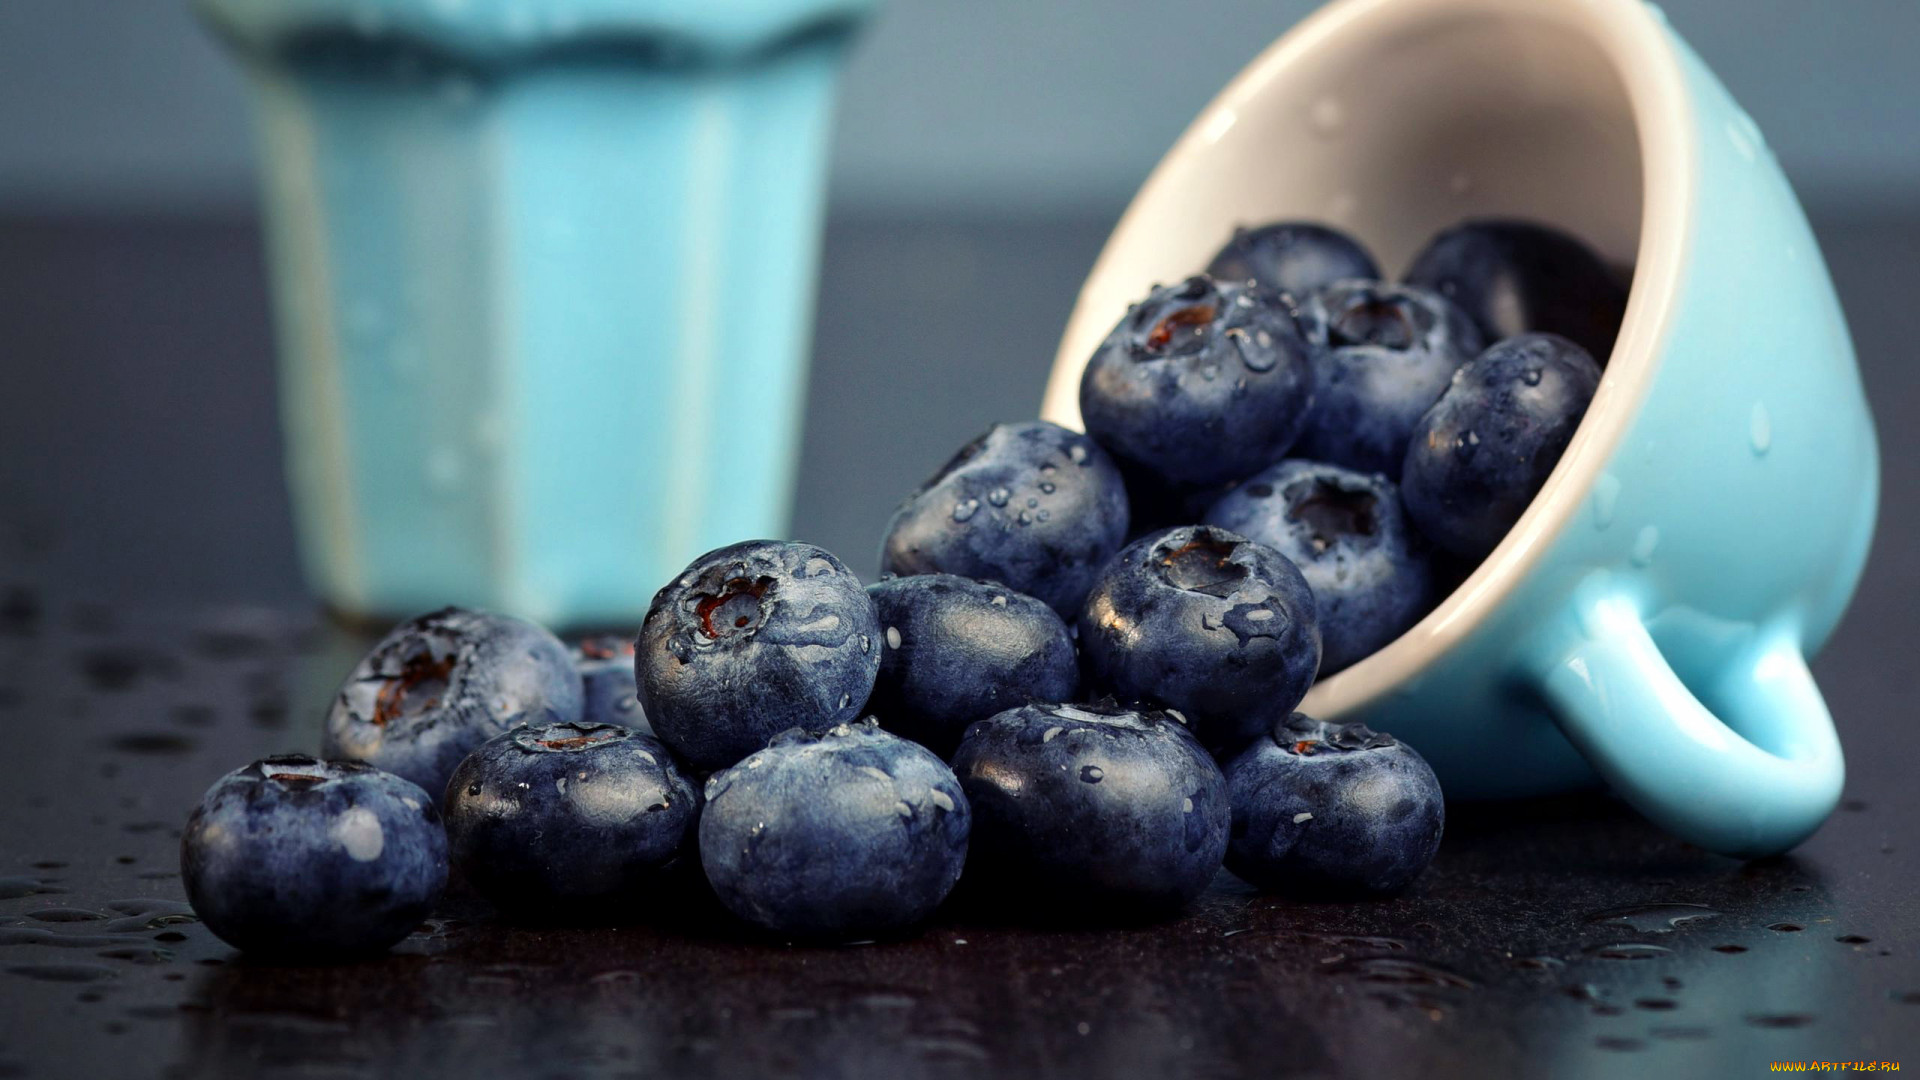 General 1920x1080 cup food fruit berries blueberries